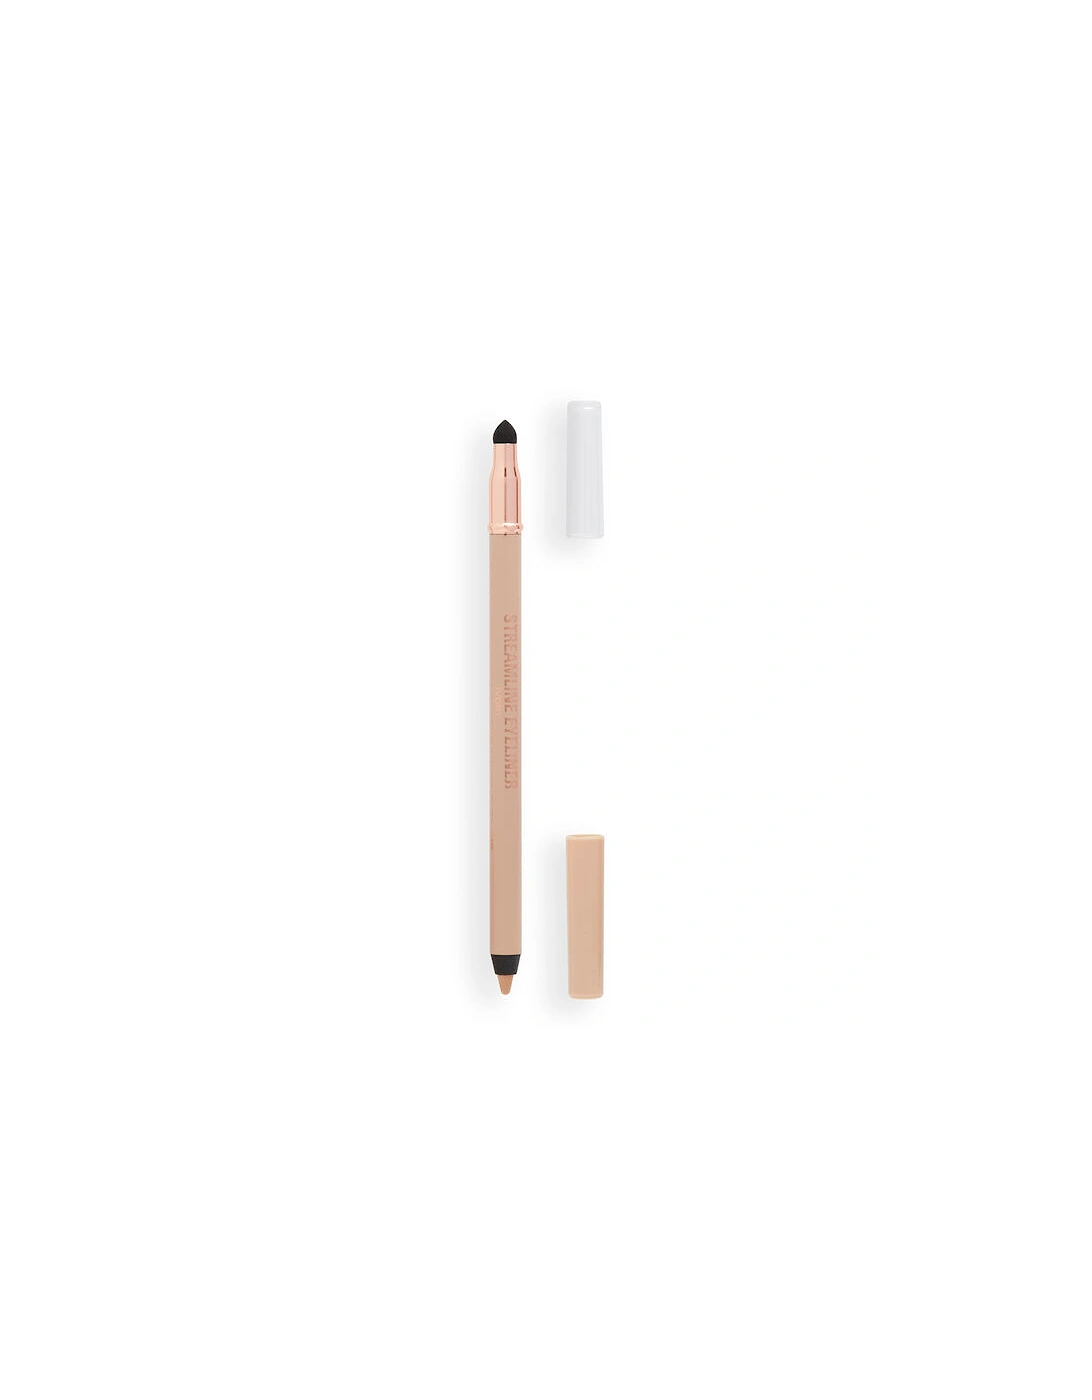 Makeup Streamline Waterline Eyeliner Pencil Ivory, 2 of 1